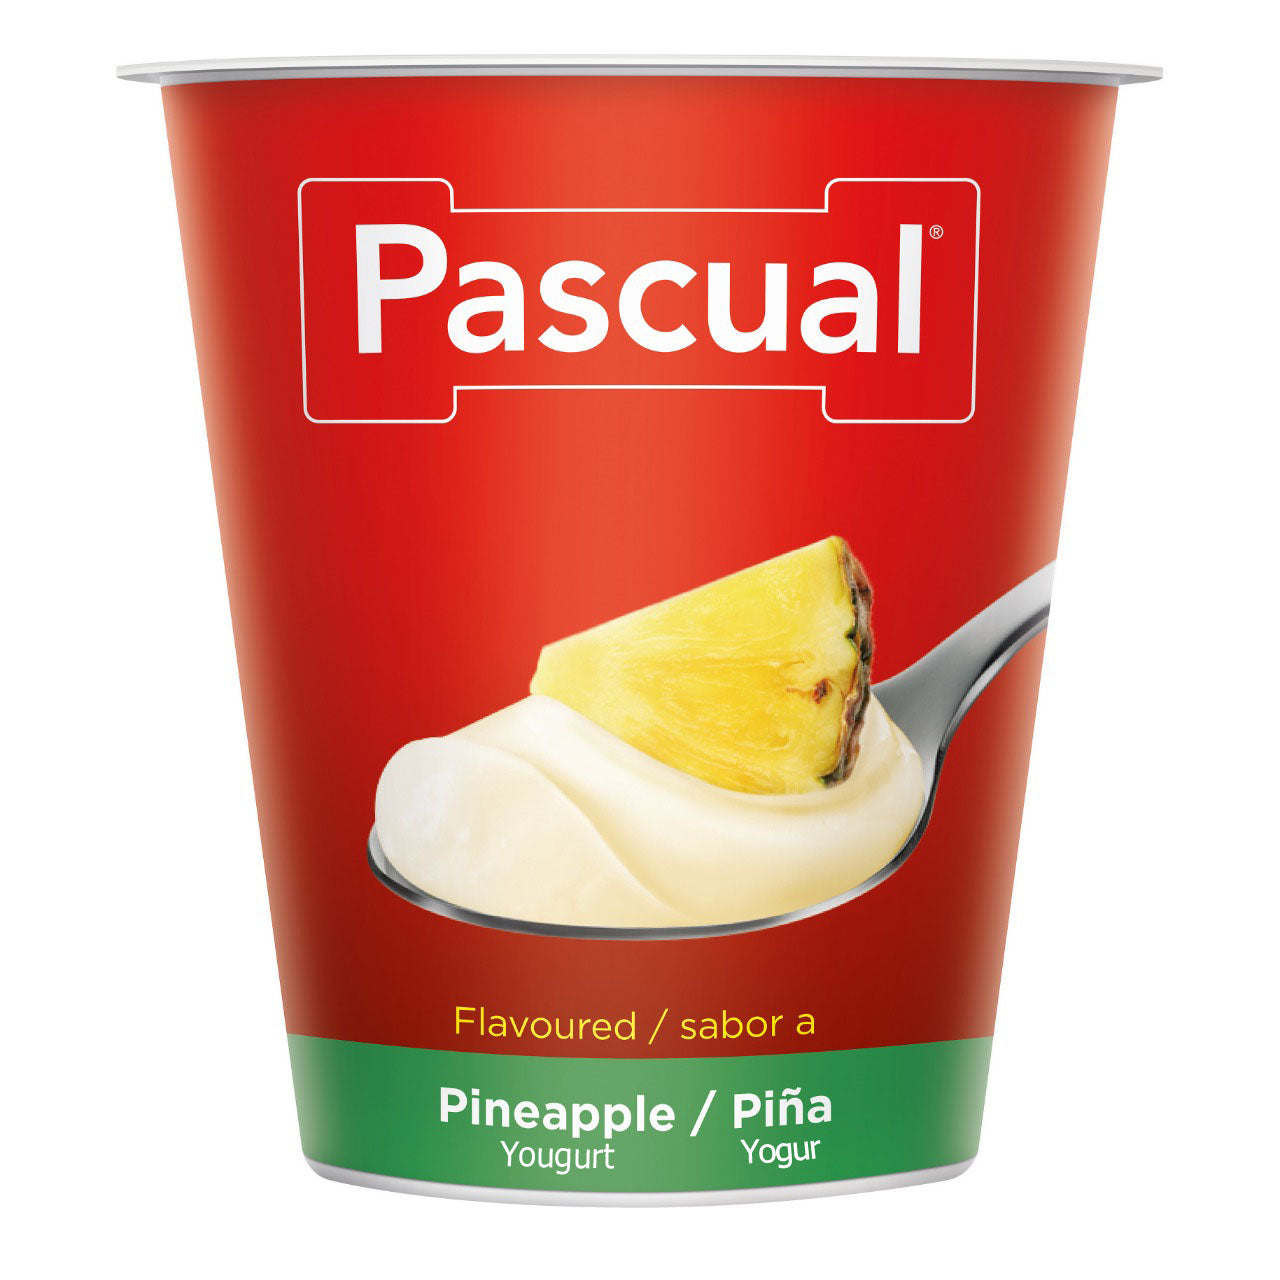 Pascual Yogurt Pineapple flavor 125g Spain (Buy One Get One)